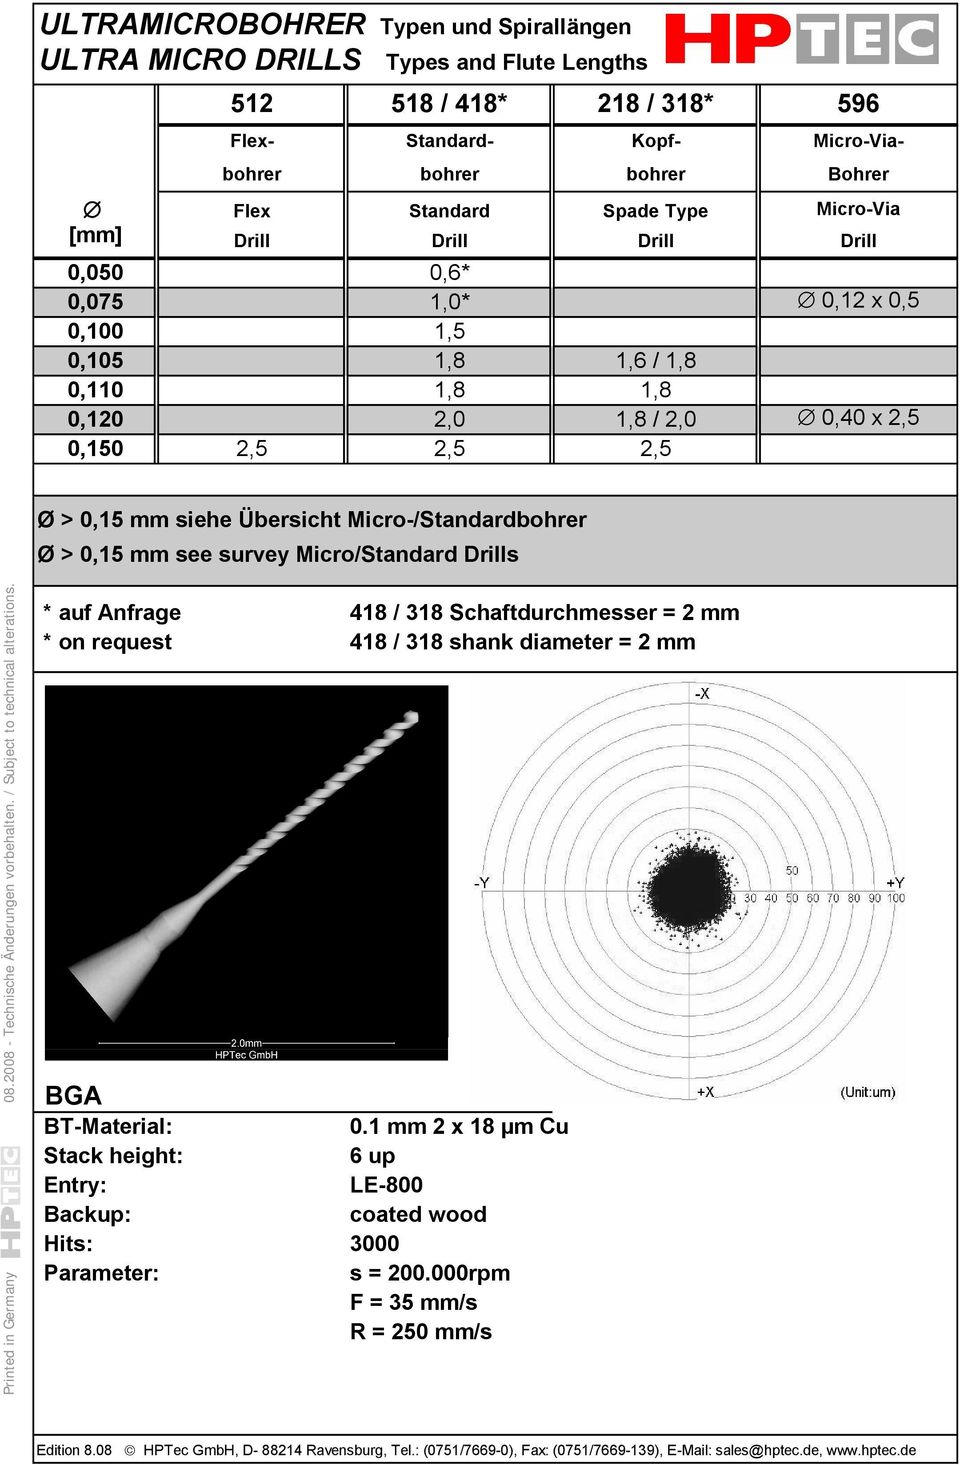 Micro-/Standardbohrer Ø > 0,15 mm see survey Micro/Standard Drills Printed in 08.2008 - Technische Änderungen vorbehalten. / Subject to technical alterations.